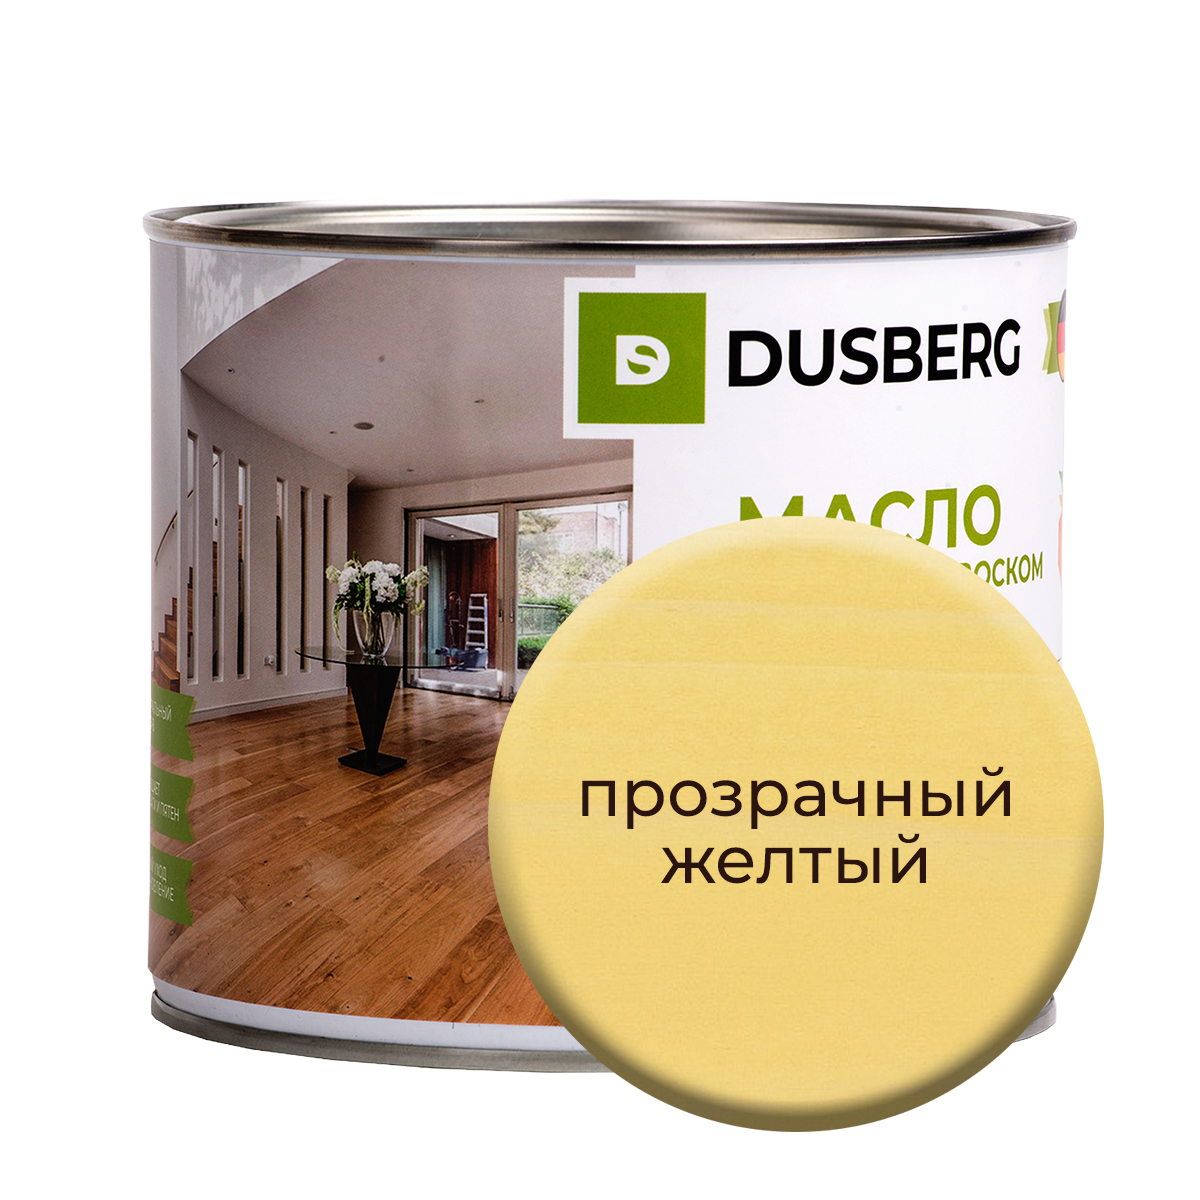 Масло Dusberg с твердым воском на бесцветной основе, 2 л Прозрачный желтый масло dusberg с твердым воском на бес ной основе 2 л светло сиреневый